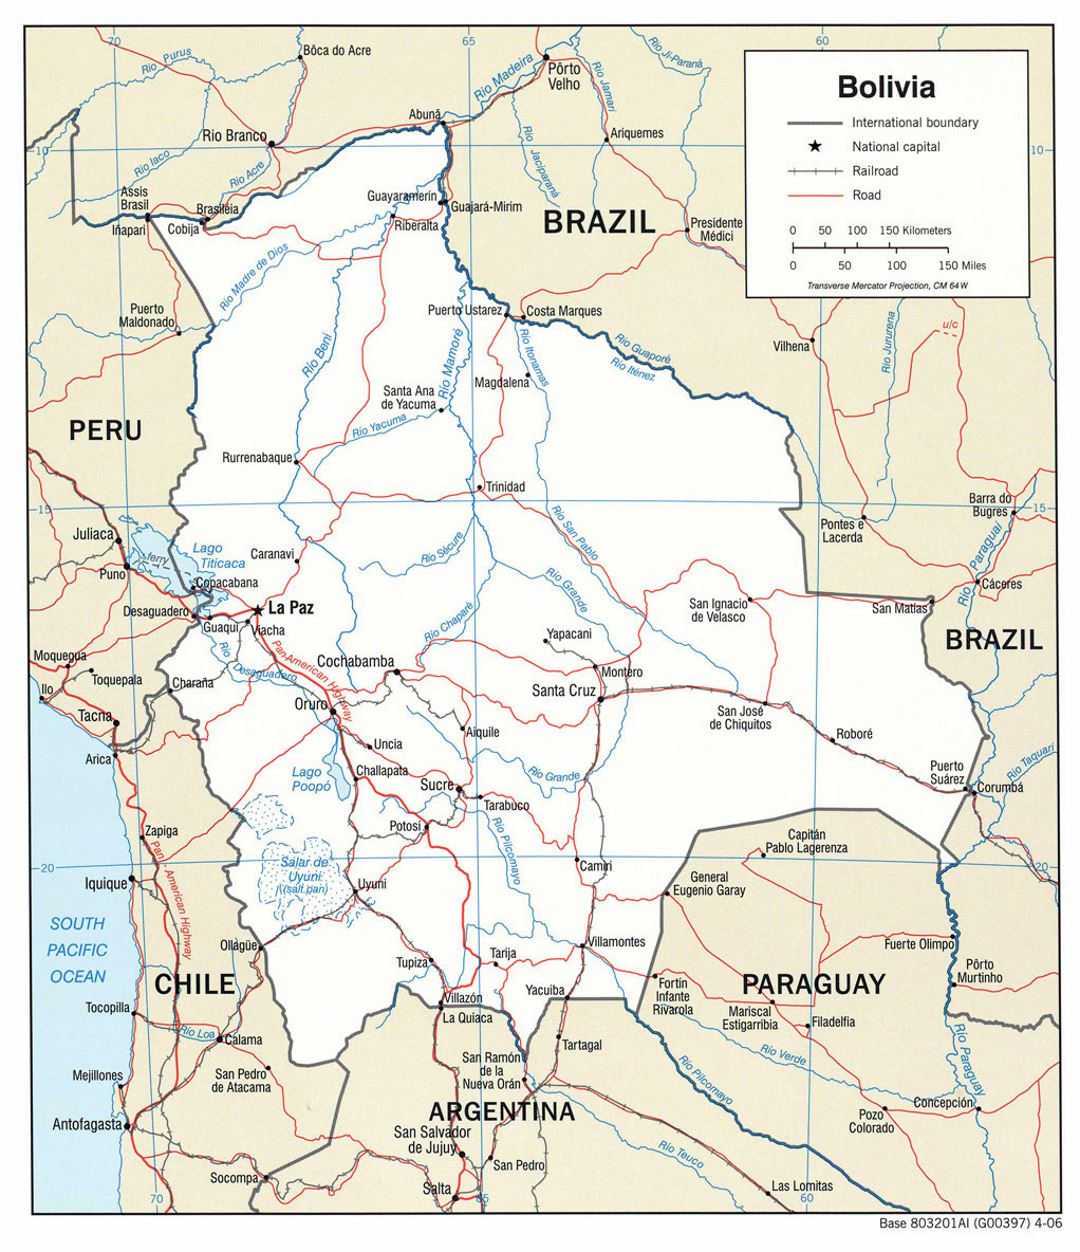 Grande mapa político de Bolivia con carreteras y principales ciudades - 2006